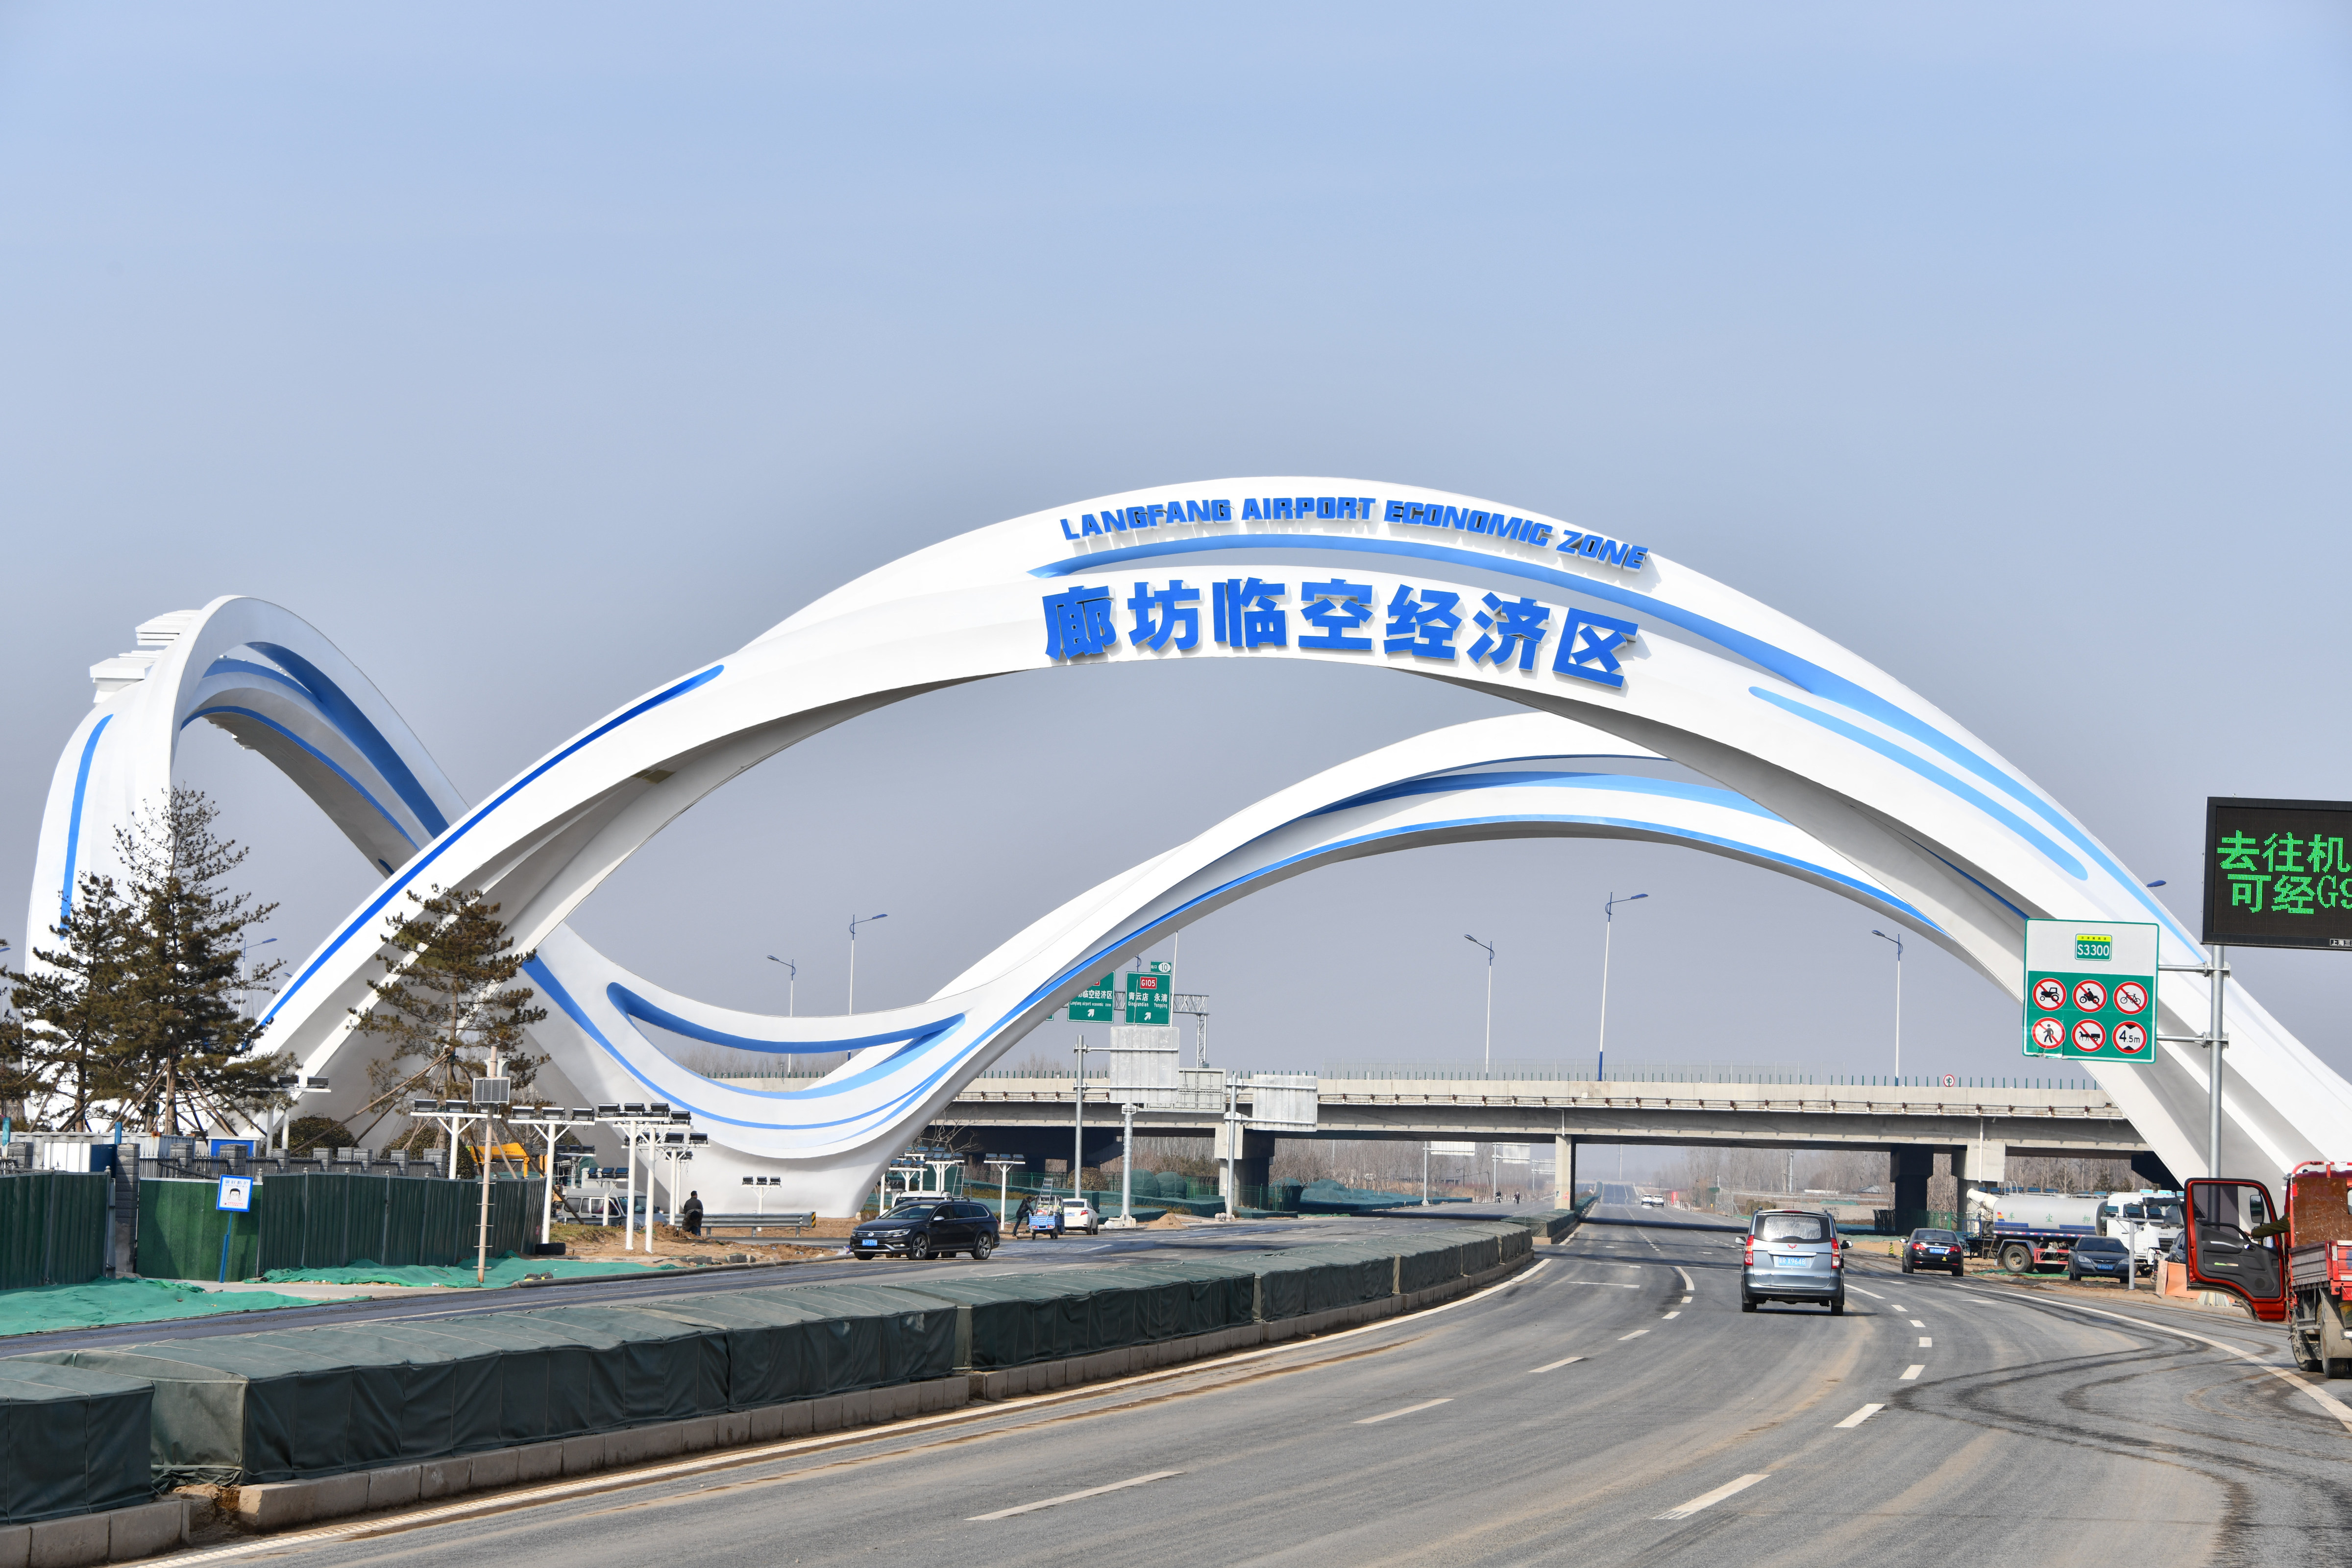 沿着高速看中国京津塘高速公路铸造北方黄金通道